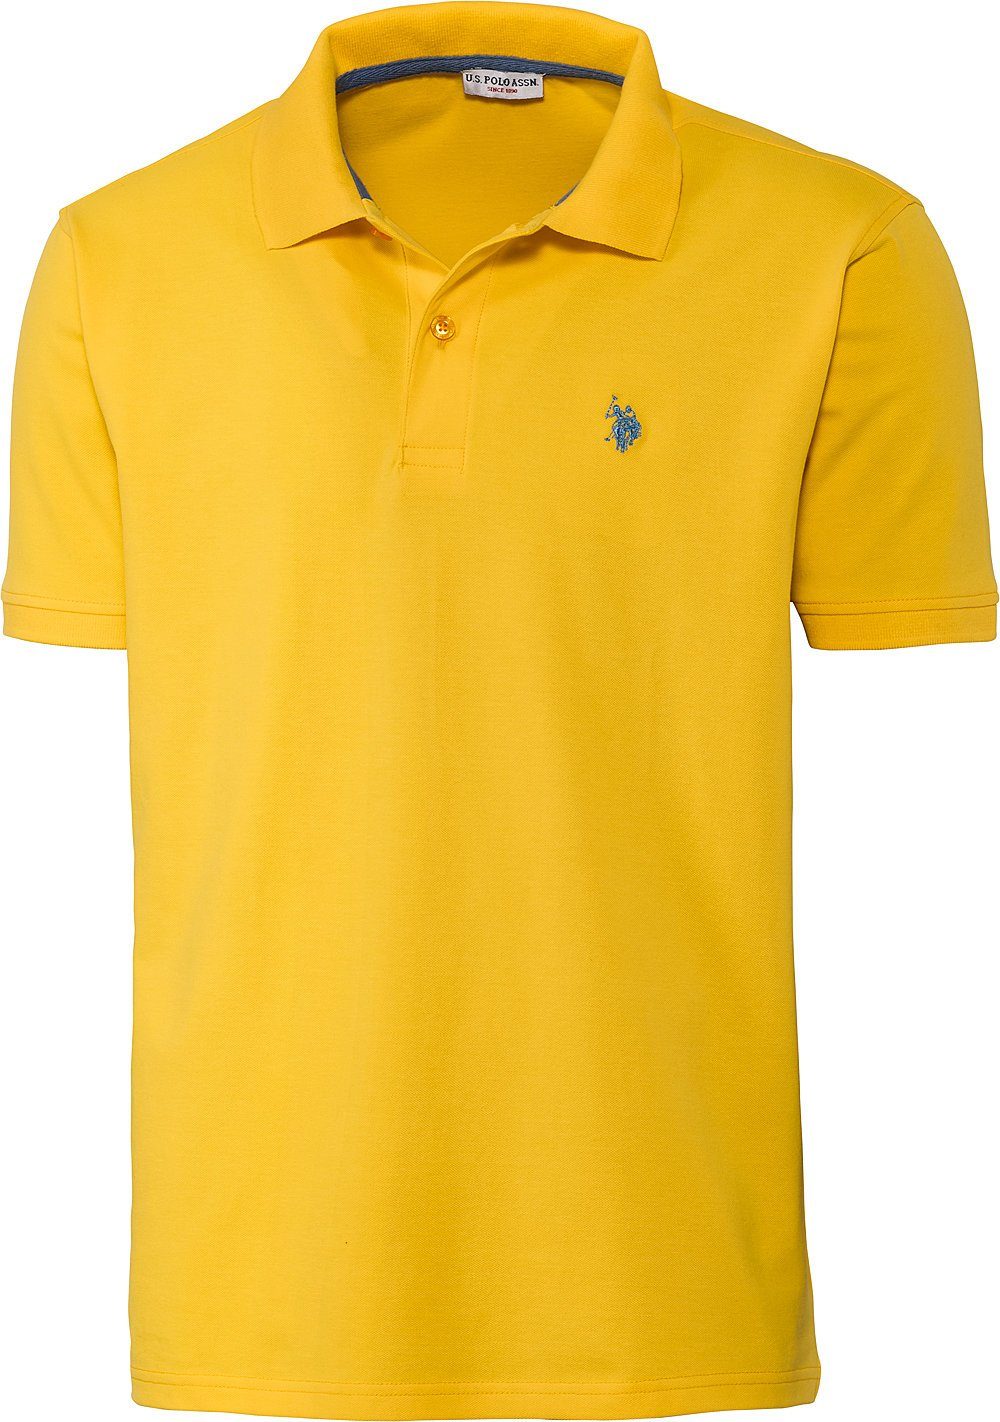 U.S. Polo Assn Poloshirt schöne Piqué-Struktur und Logo-Stick im Kontrastton gelb